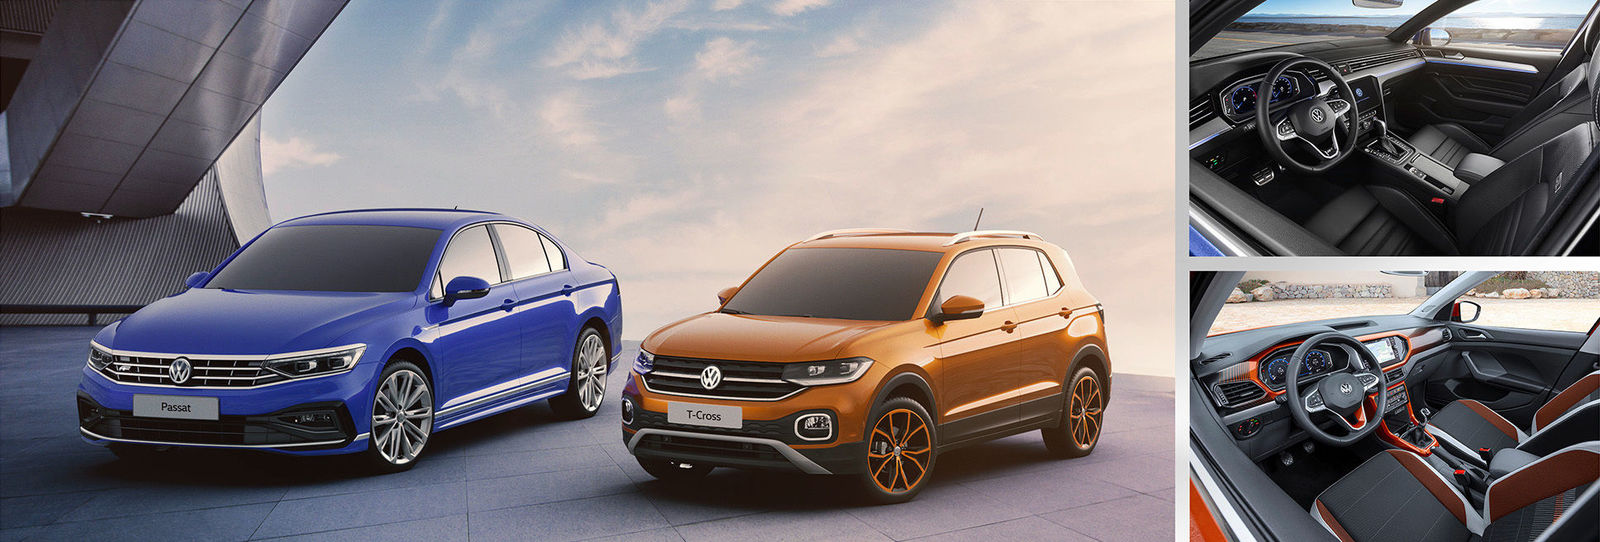 Volkswagen Passat und T-Cross